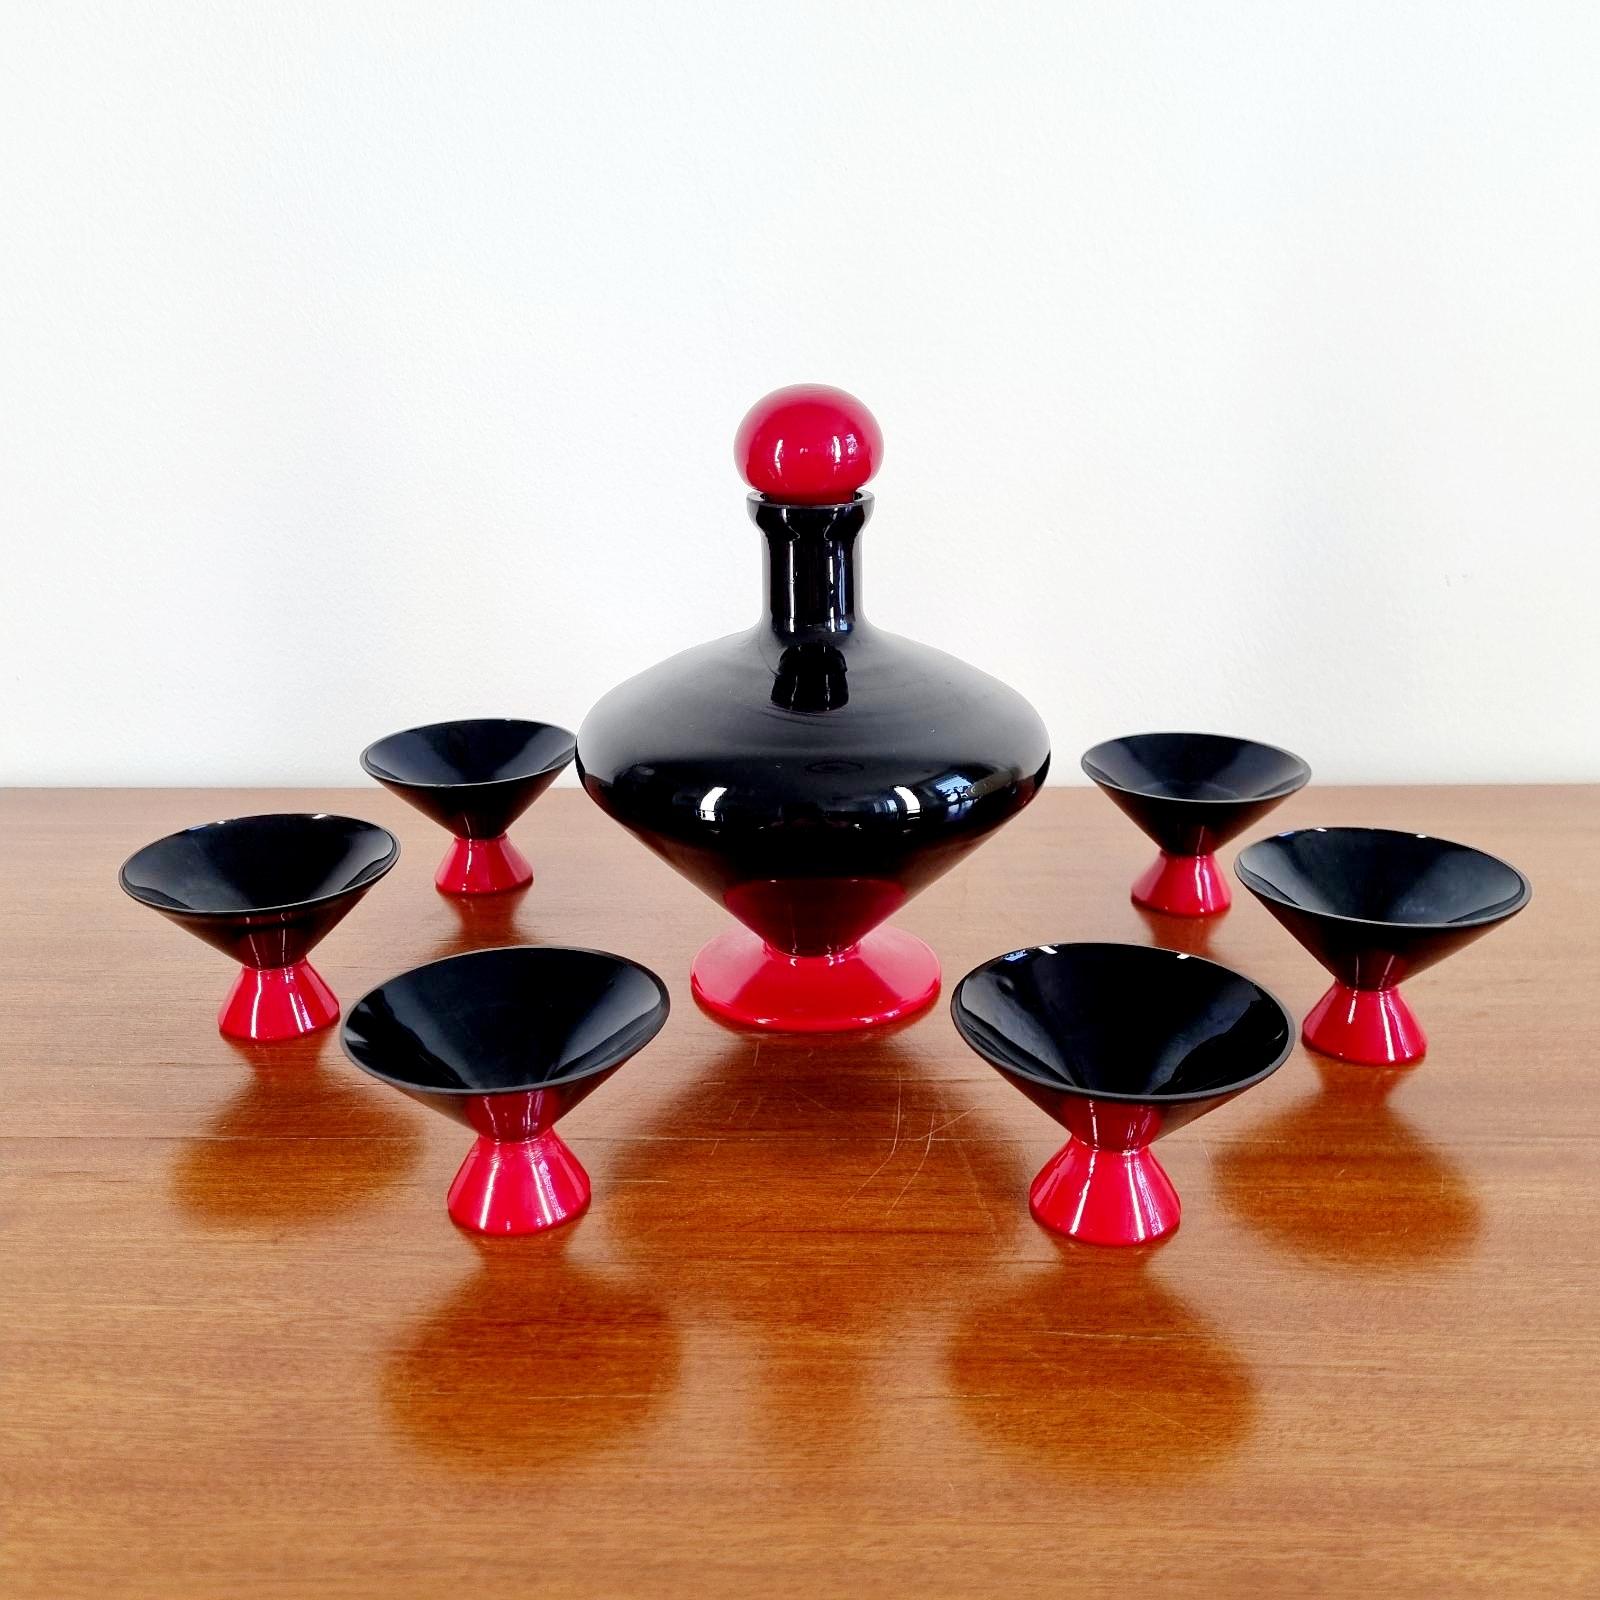 Seltene Murano Glas Liquore Set in rot und schwarz Farbe. Entworfen von Napoleone Martinuzzi für Venini in den 30er Jahren.

In gutem Vintage-Zustand mit geringen Gebrauchs- und Altersspuren.

Abmaße:

Die Flasche:
Höhe 17 cm
Durchmesser 13